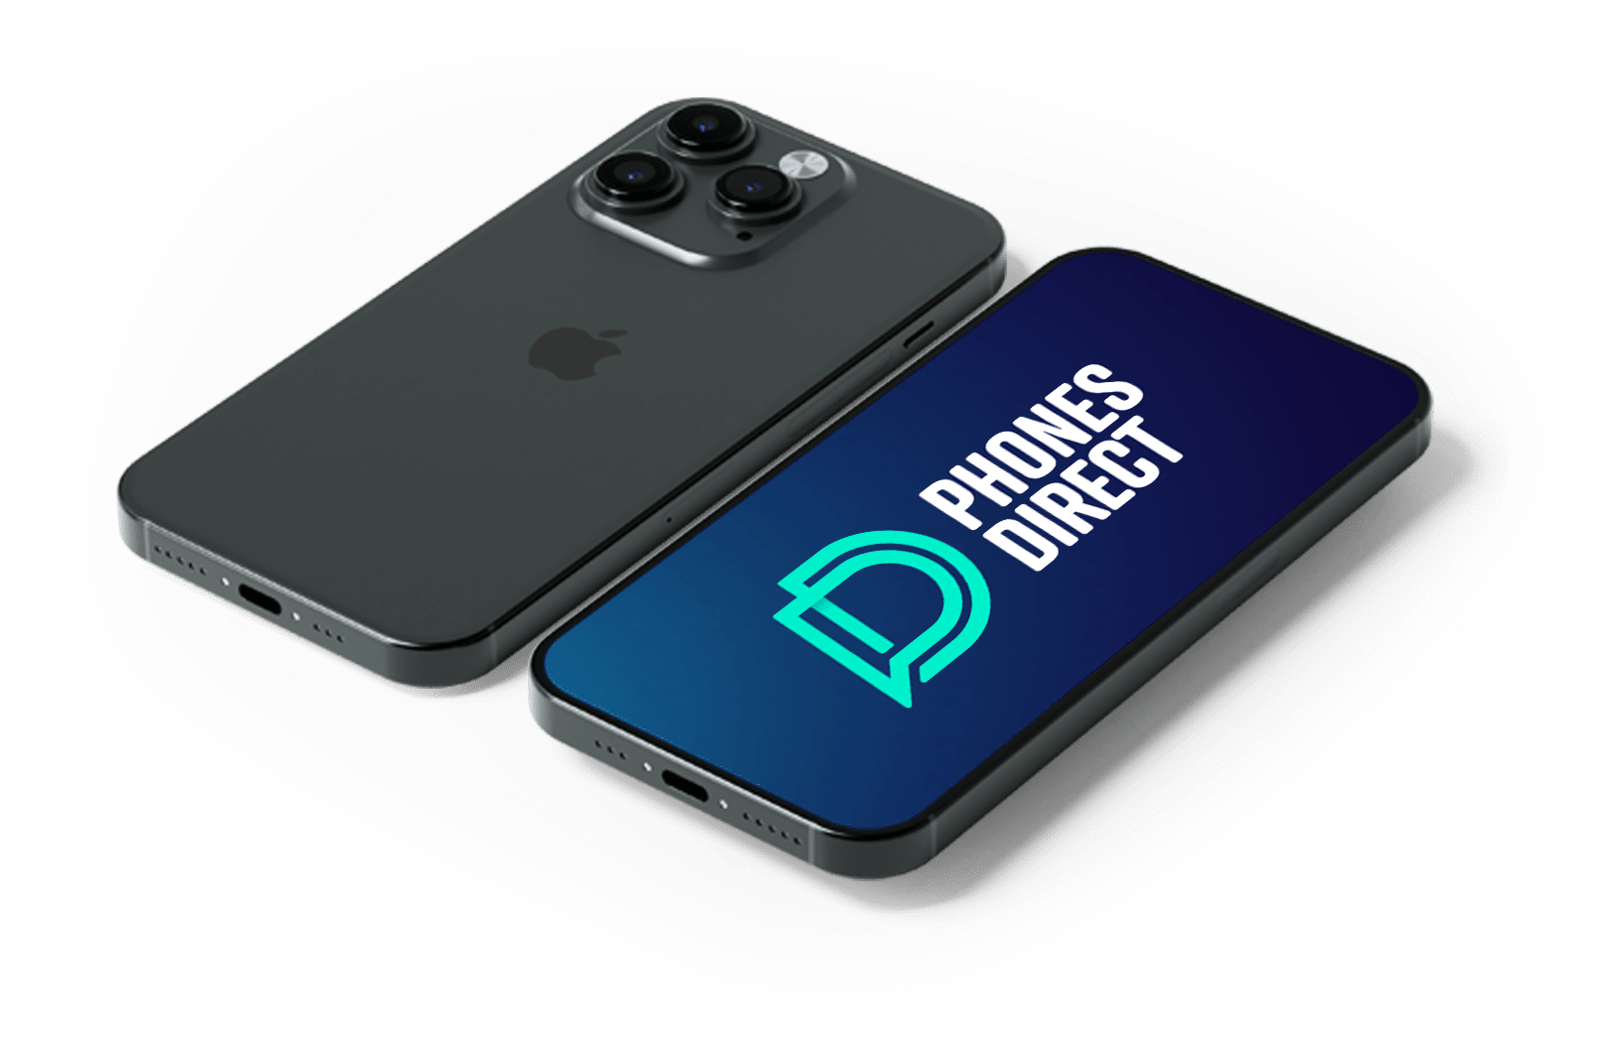 PhonesDirect Devices